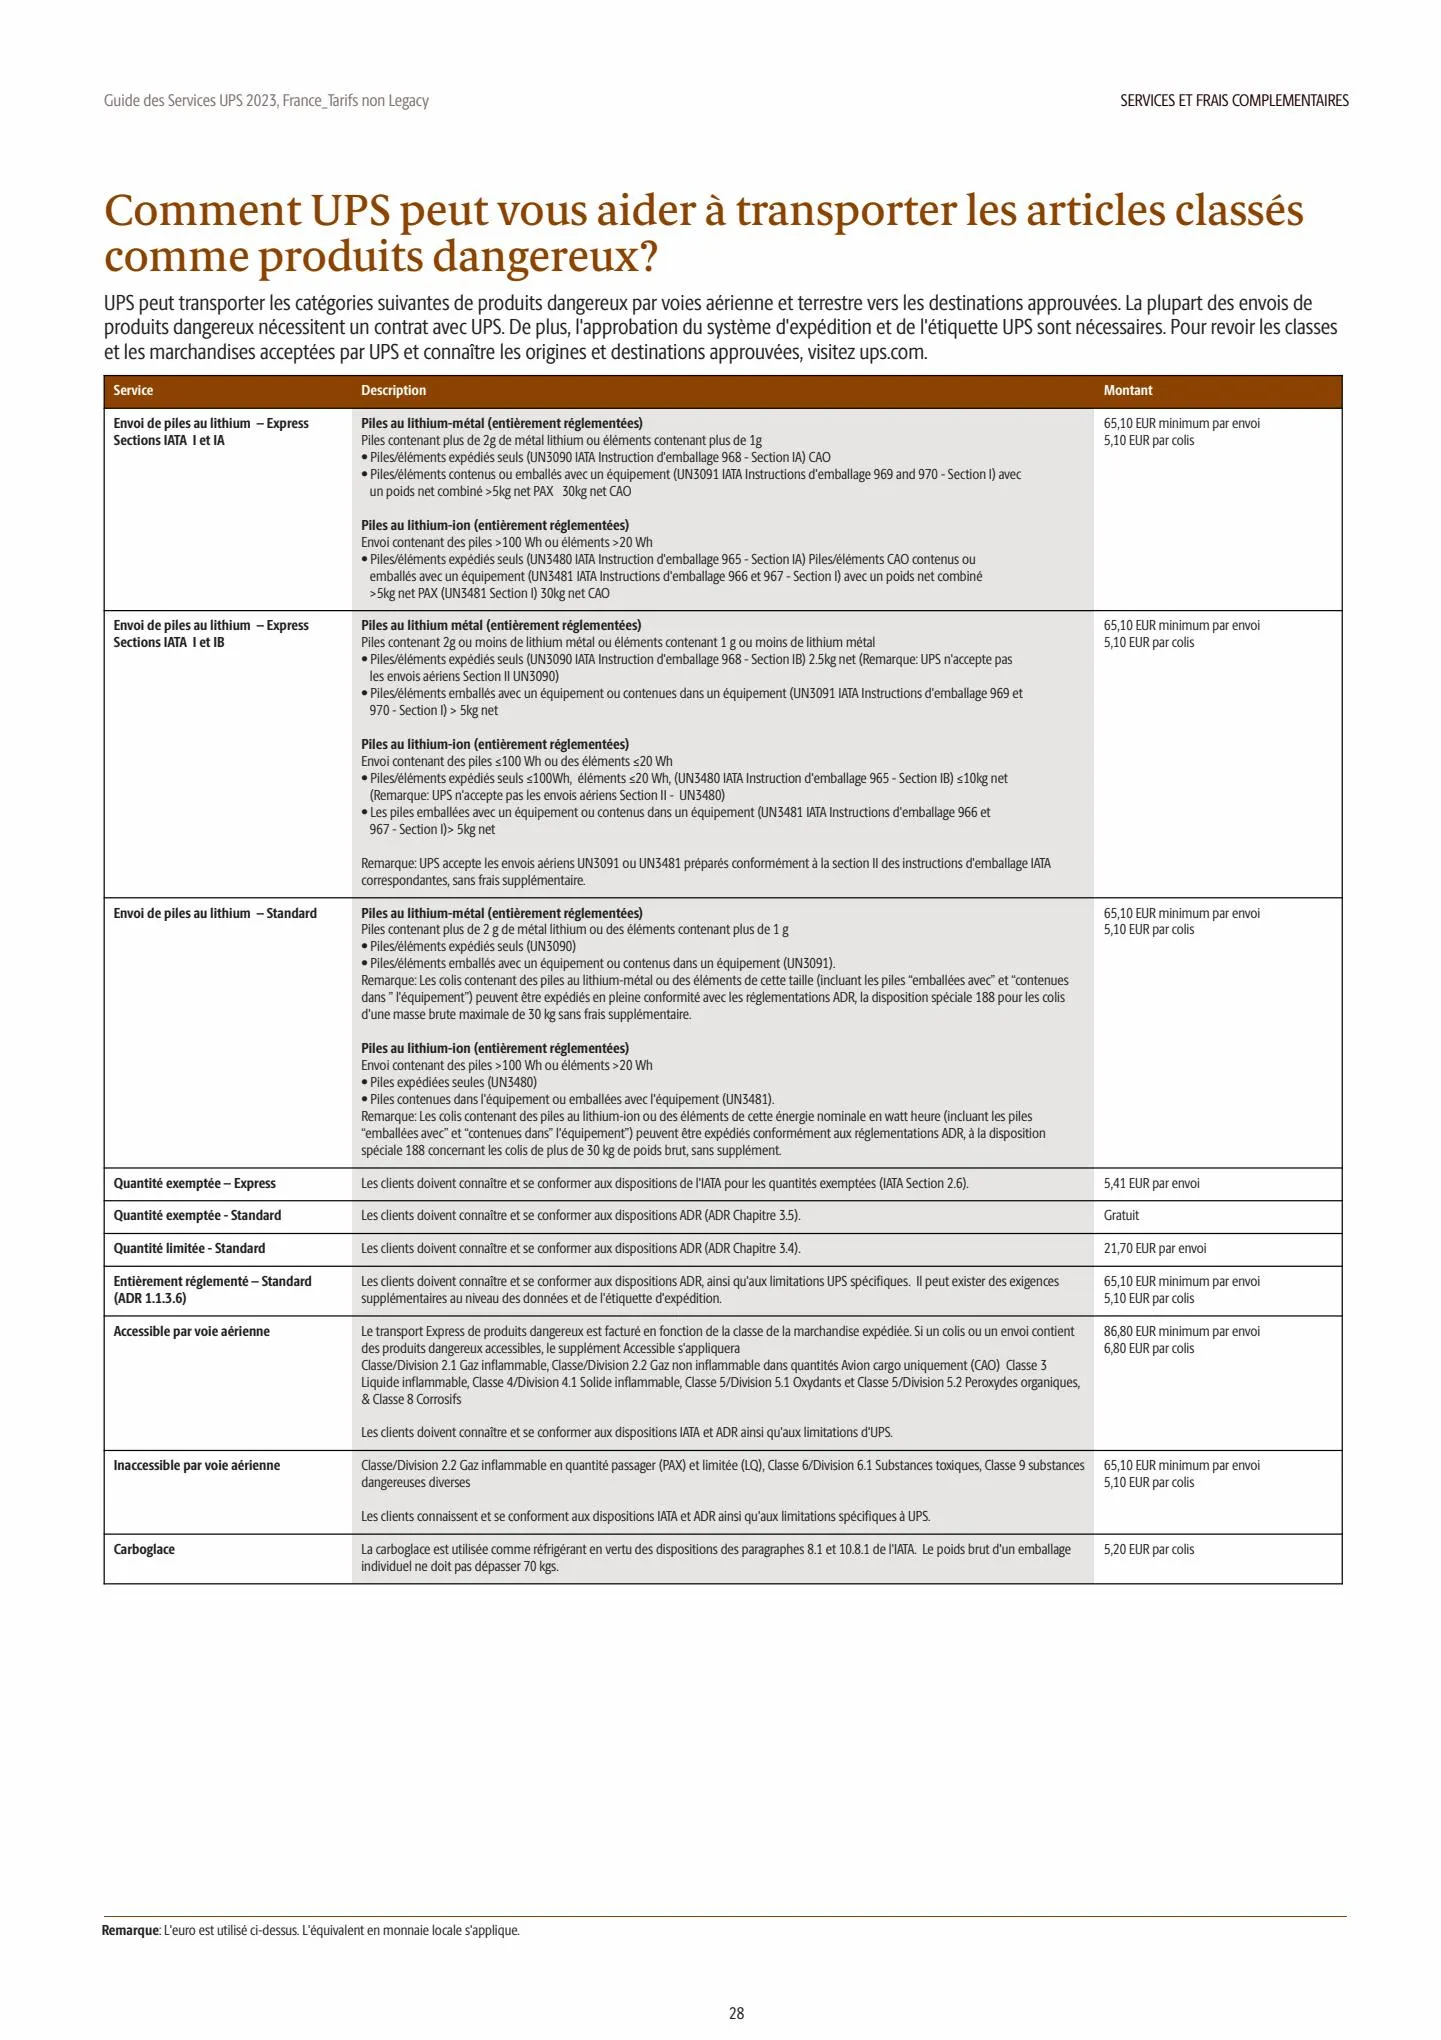 Catalogue Guide des Services 2023, page 00028